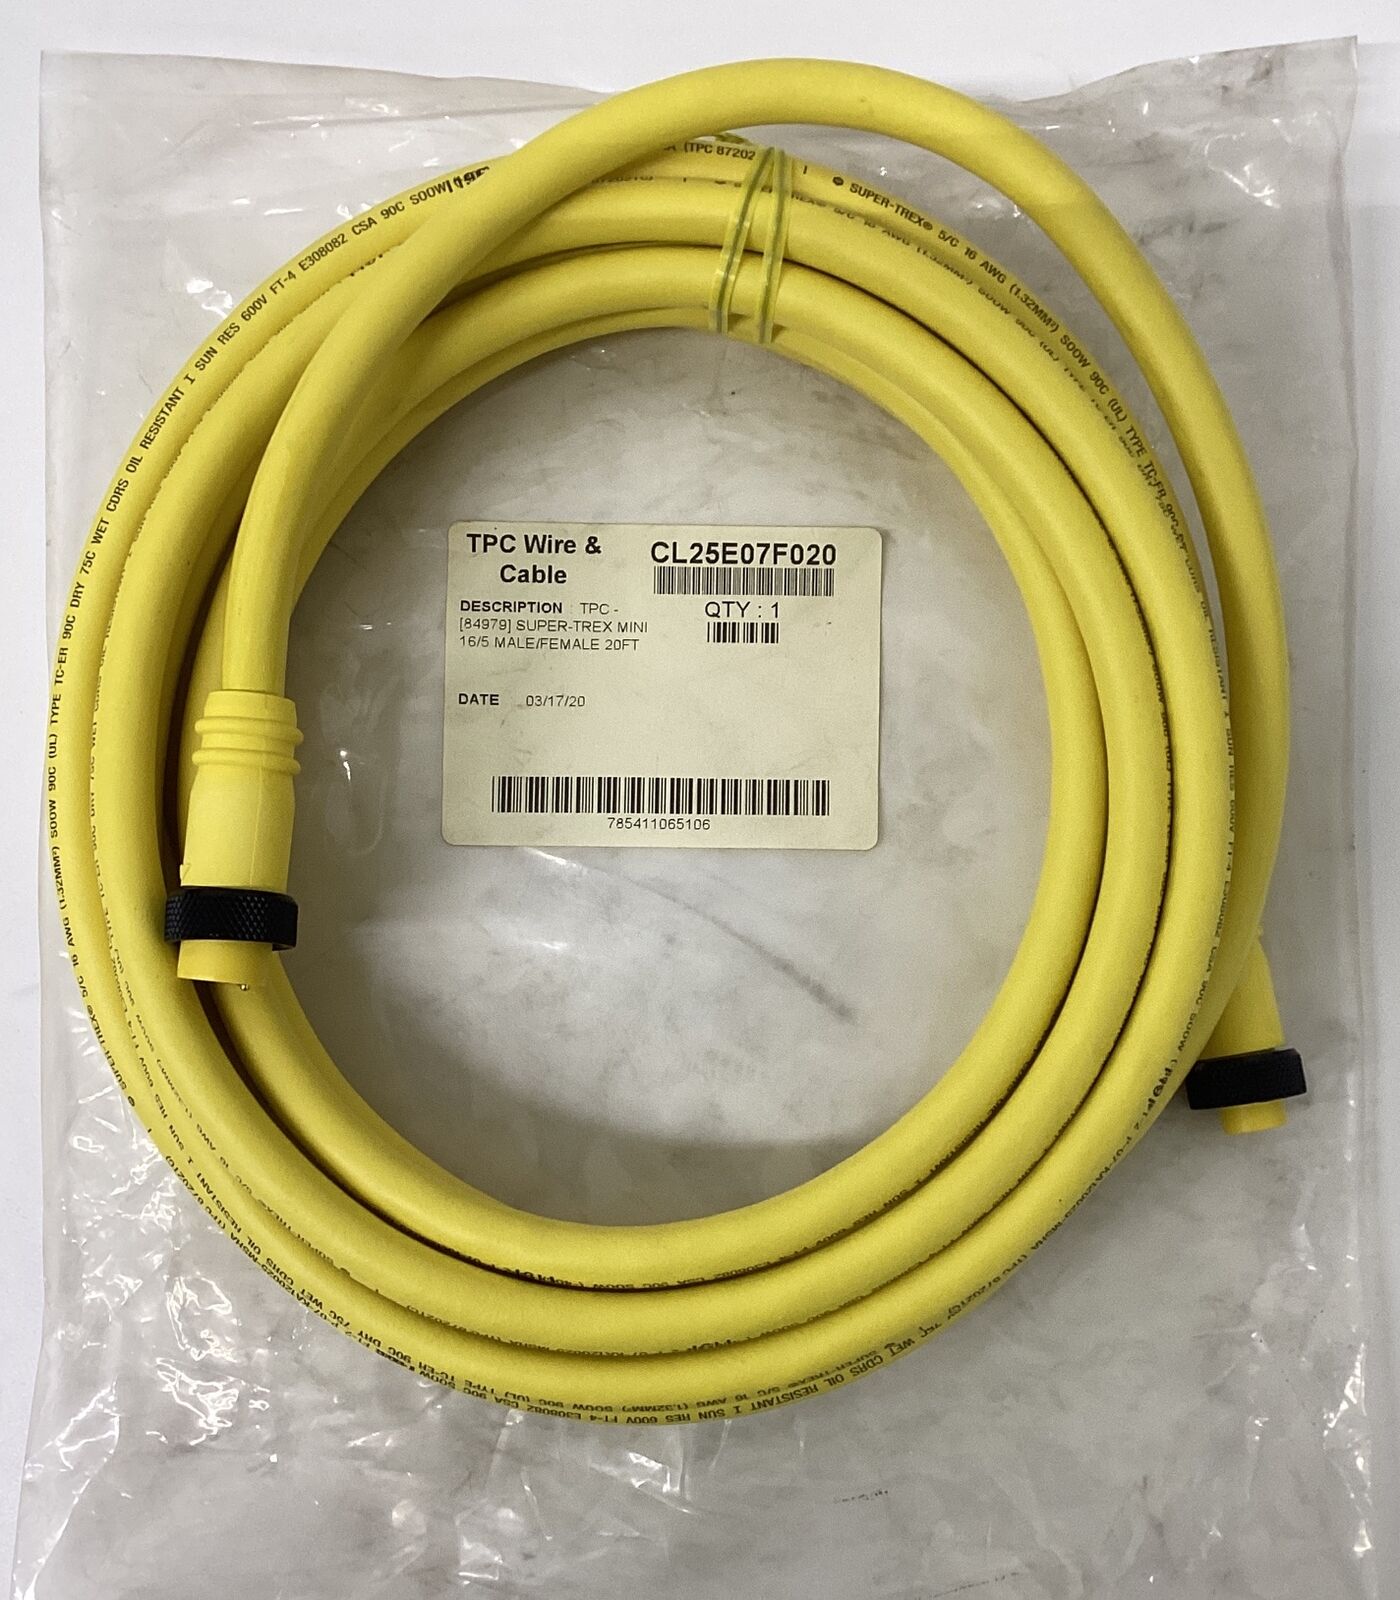 TPC Wire & Cable CL25E07F020 Super-Trex Mini 16/5 Male/Female 20FT (CBL148)